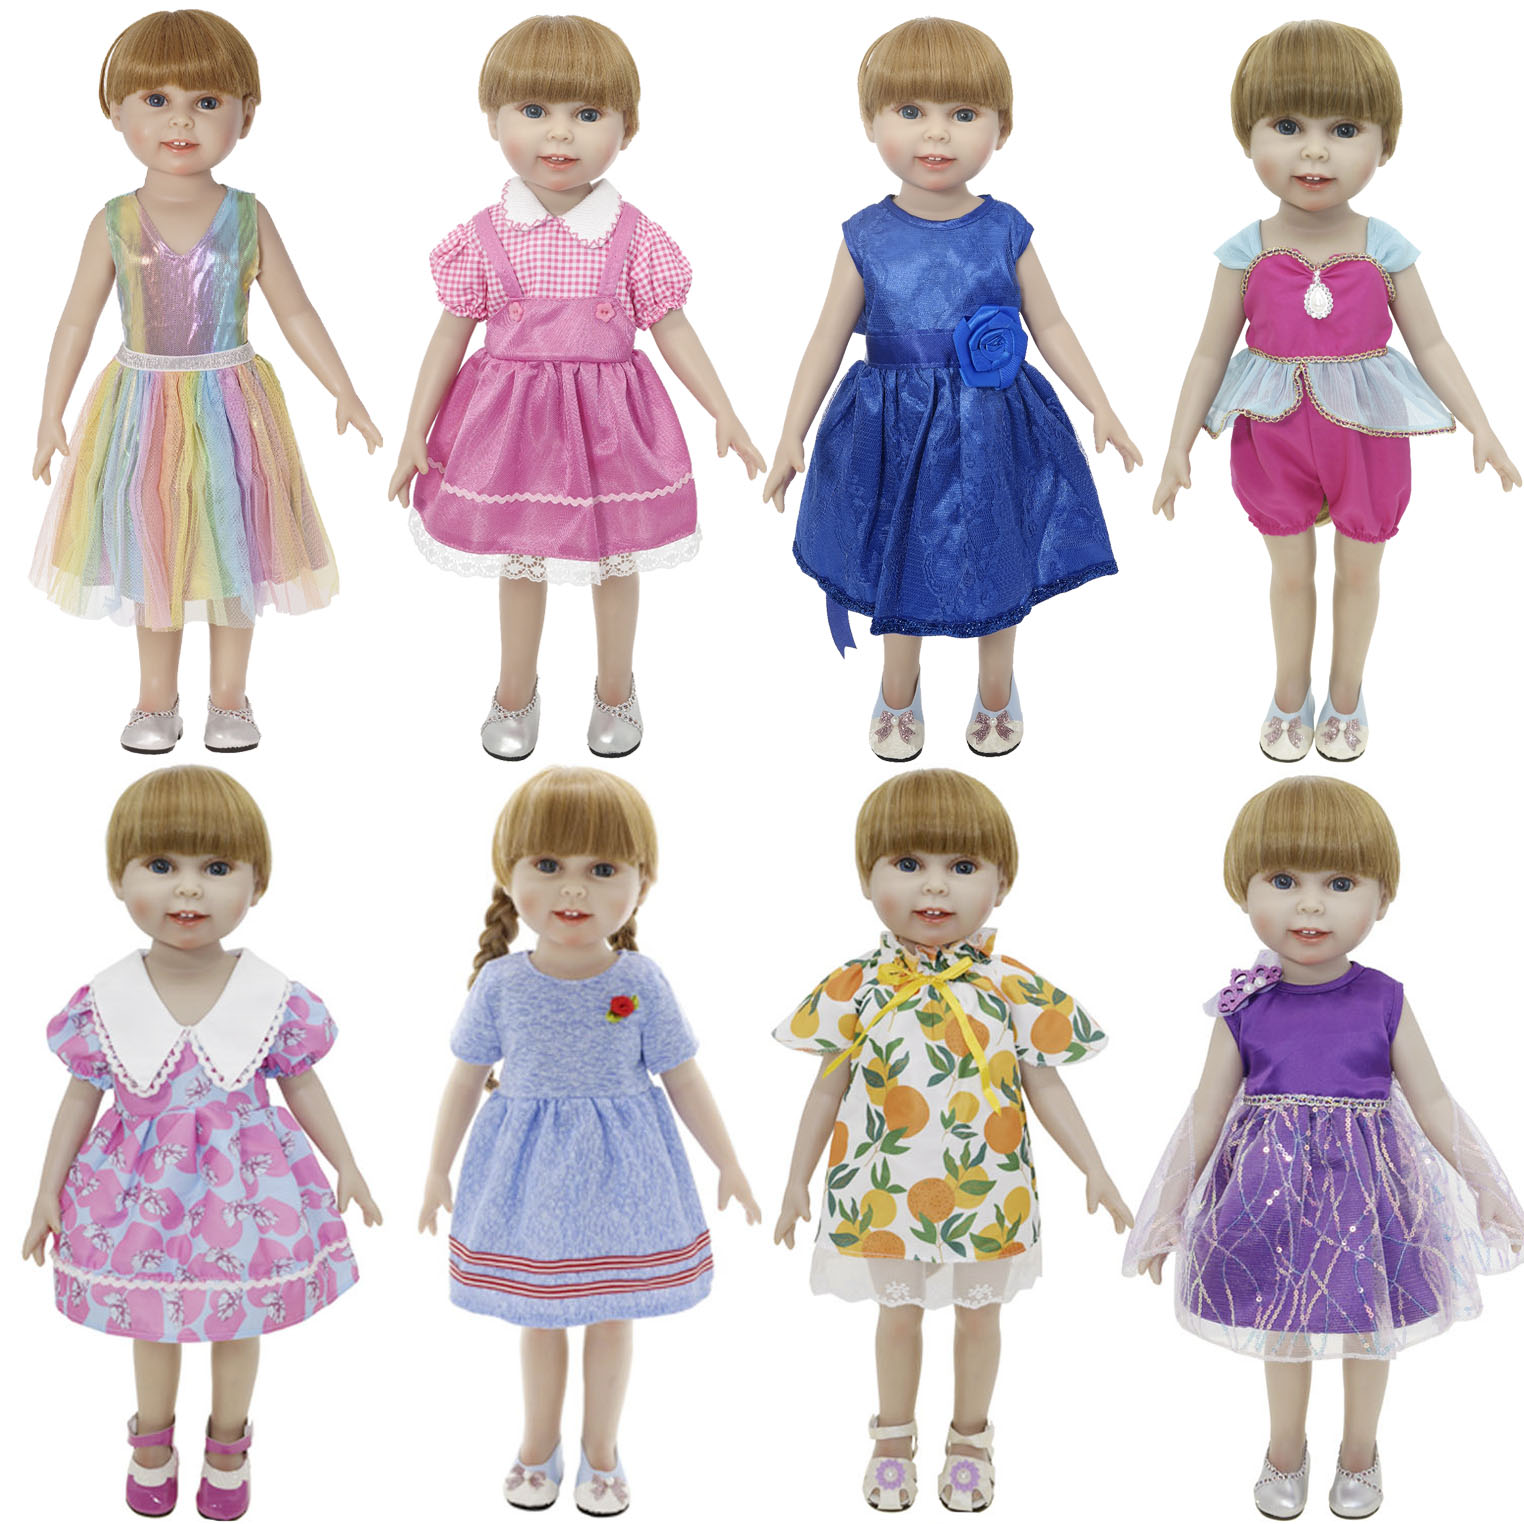 45厘米美国女孩偶季亚力山大18英寸浓汤娃娃可穿衣服玩具服装礼物